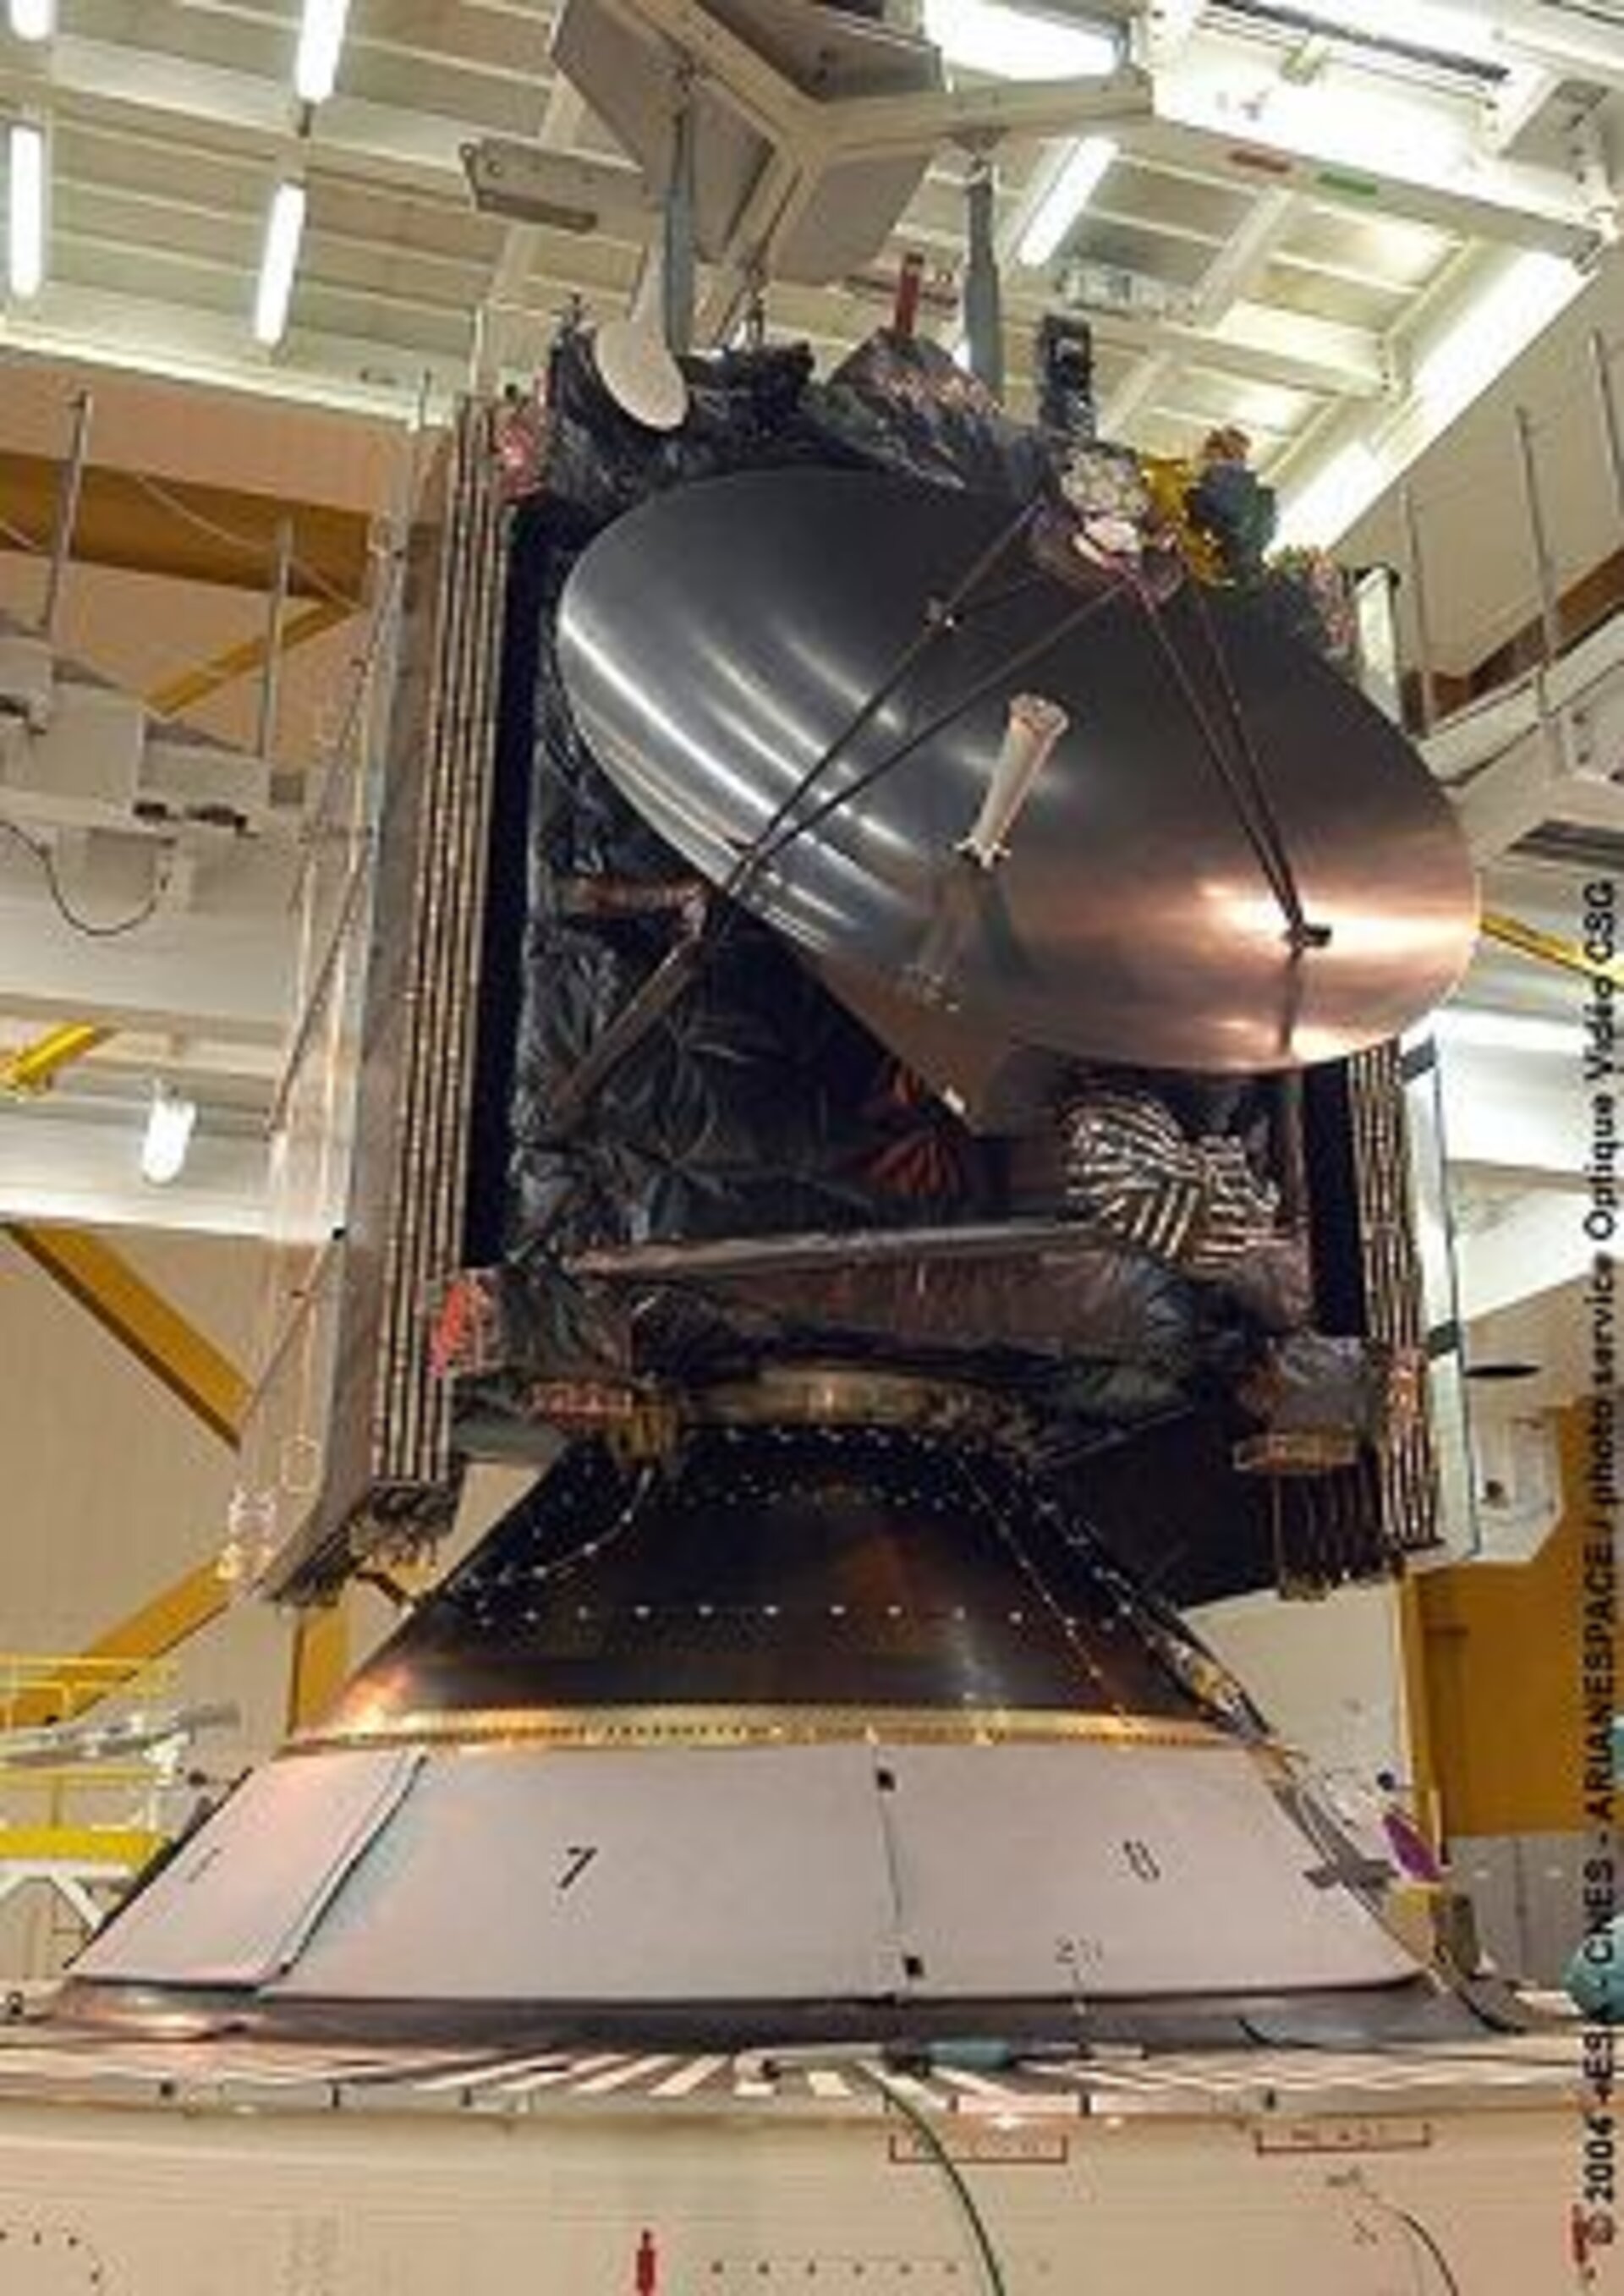 The Rosetta spacecraft